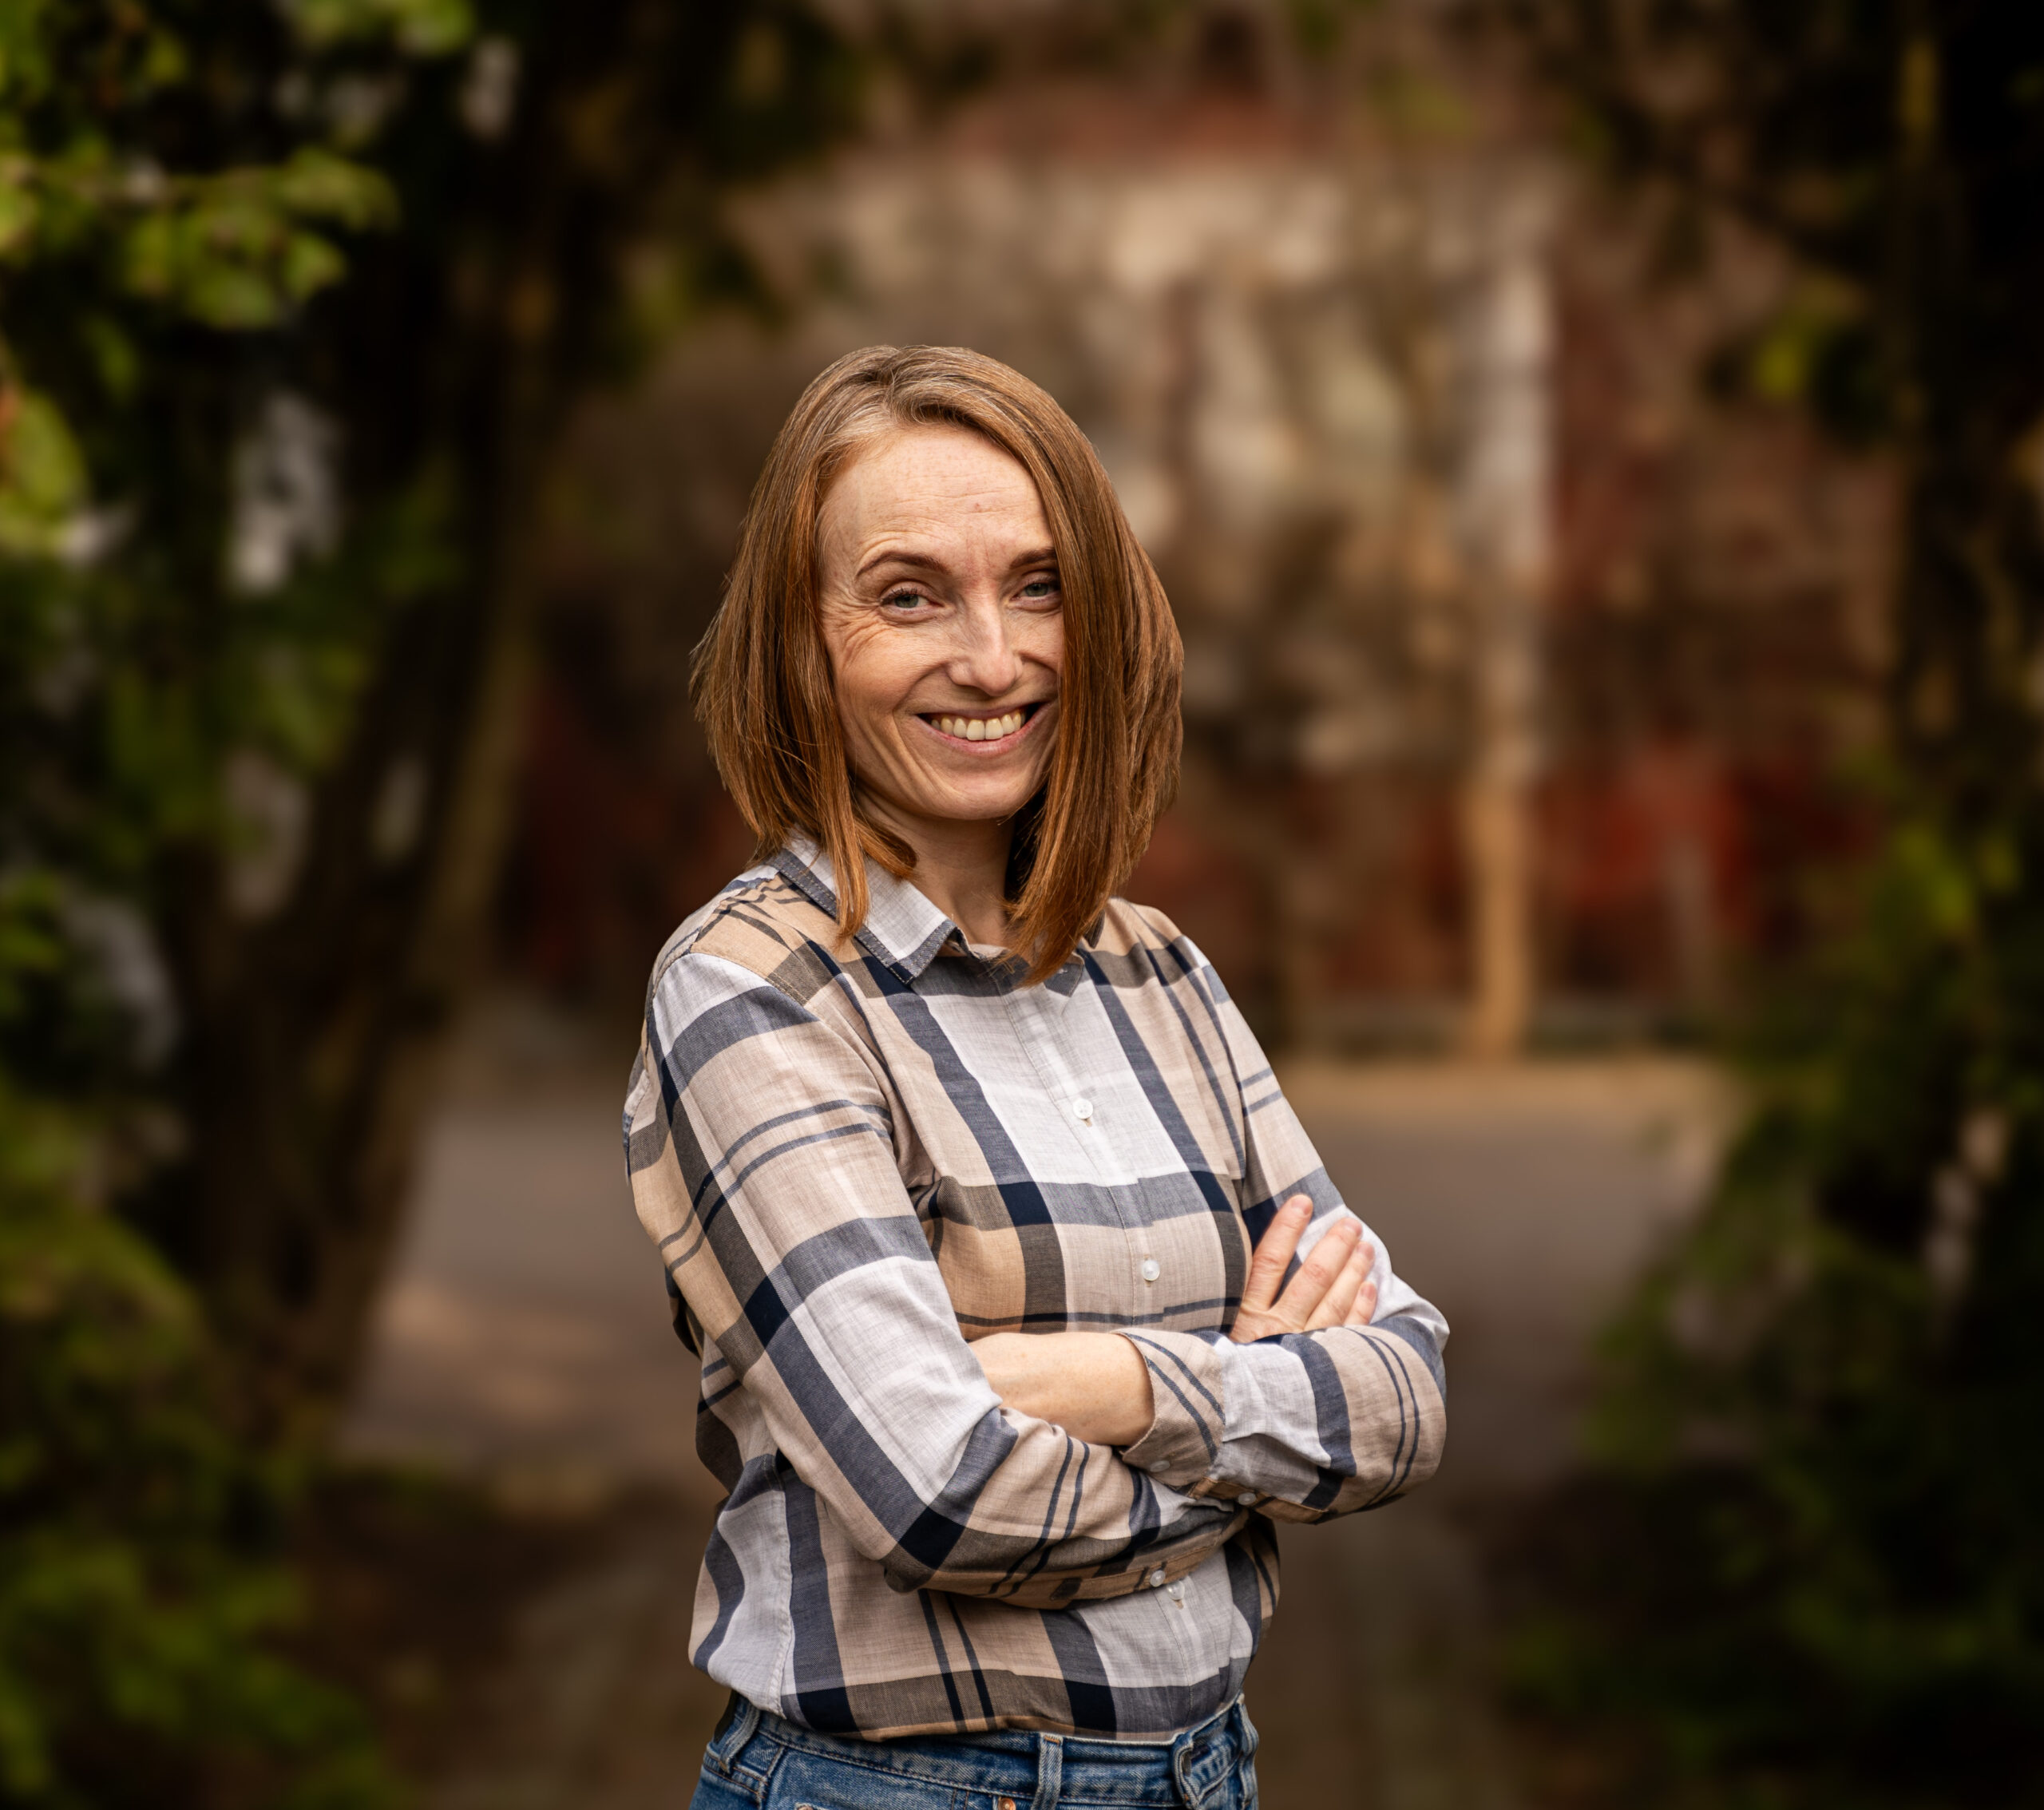 Na zdjęciu widać uśmiechniętą Paulinę Zychowicz w kraciastej koszuli. W tle widać niewyraźną obrośniętą zielenią bramę i dom.